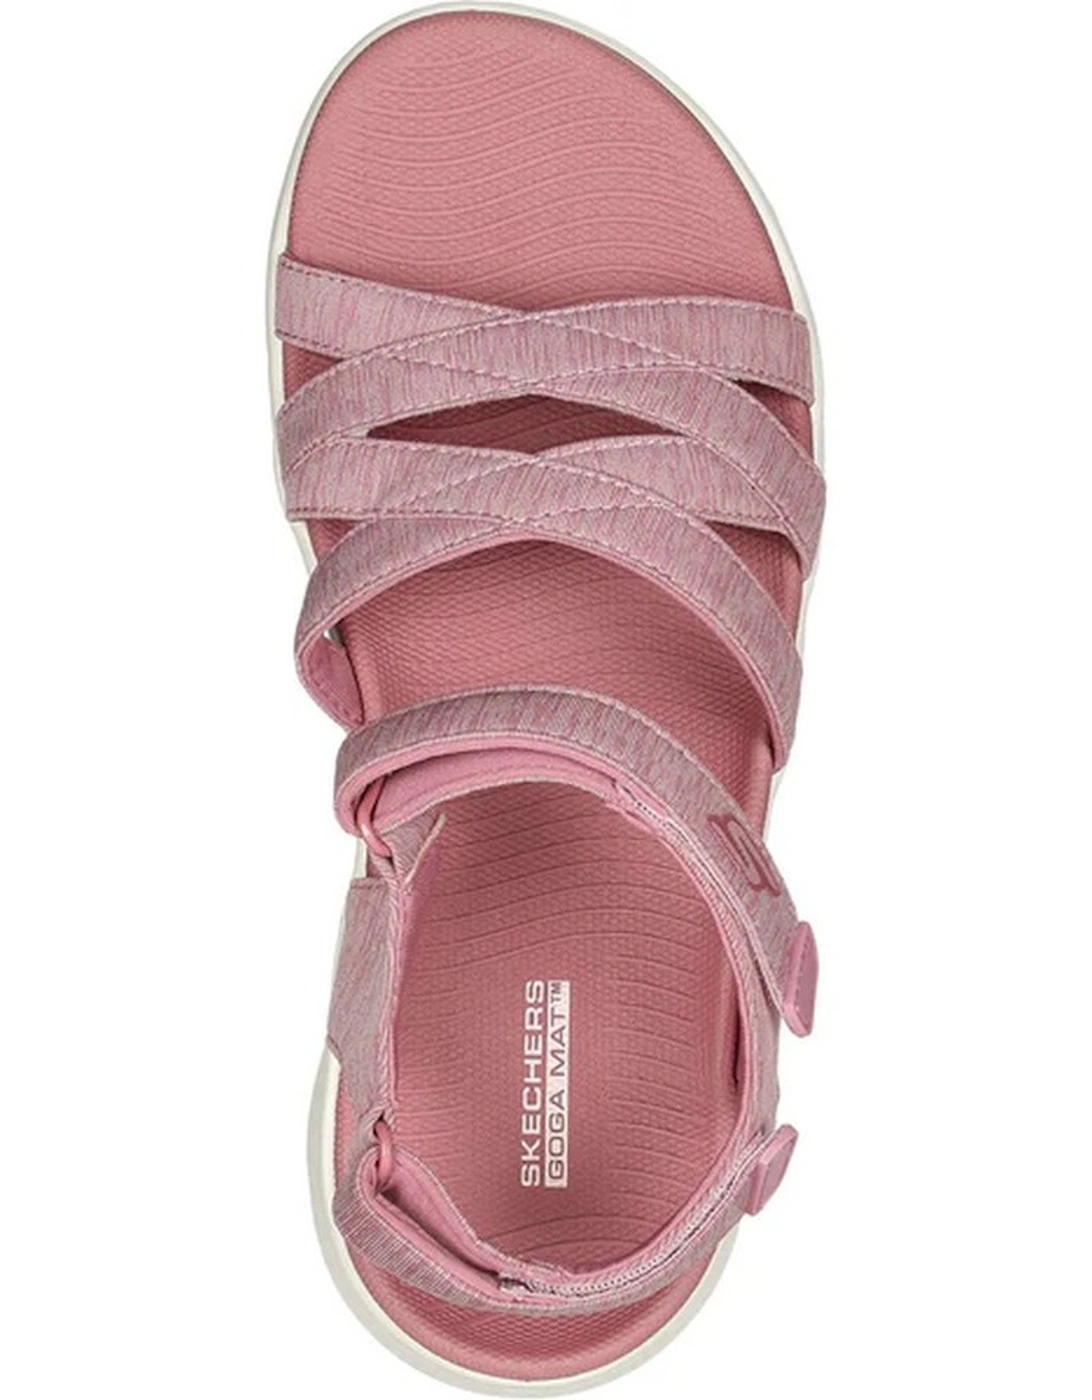 Skechers Womens/Ladies Go Walk Flex Sunshine Sandals